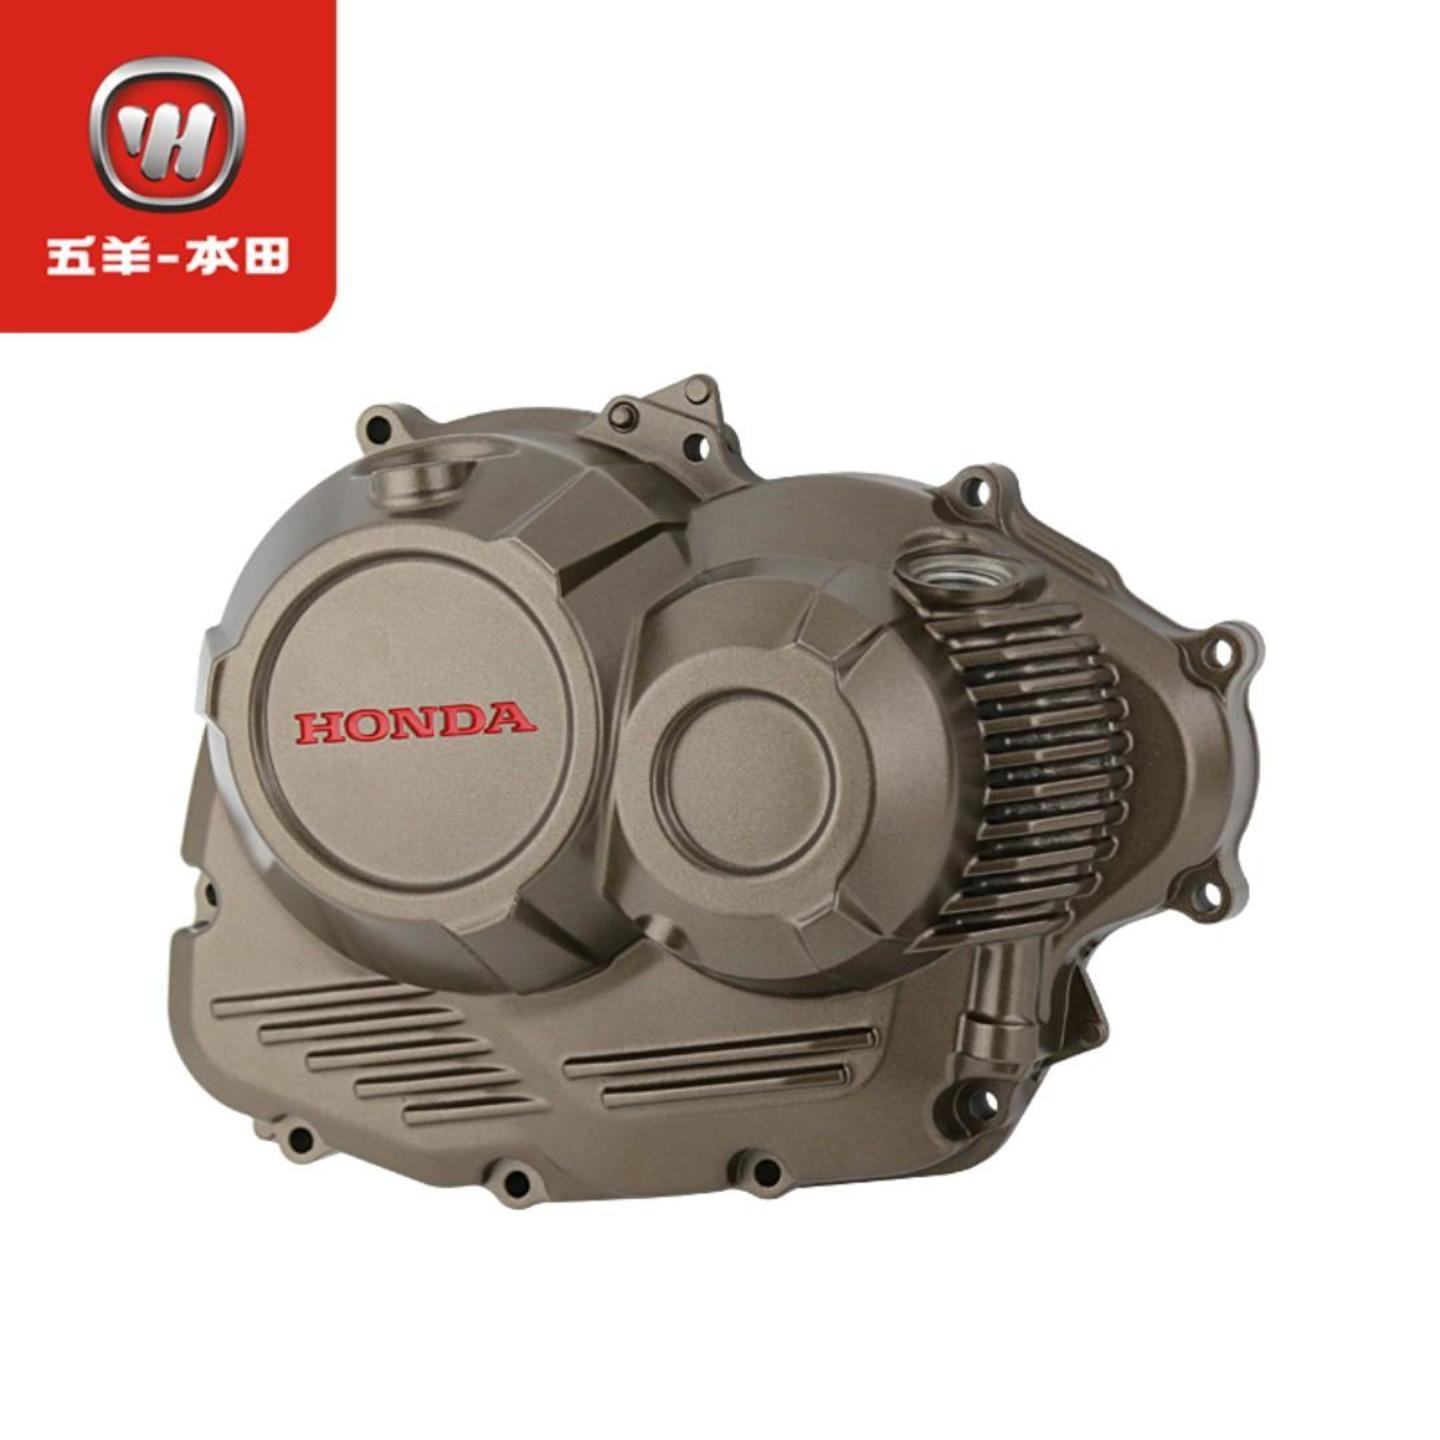 Honda CB190R CB190X tourism engine side cover